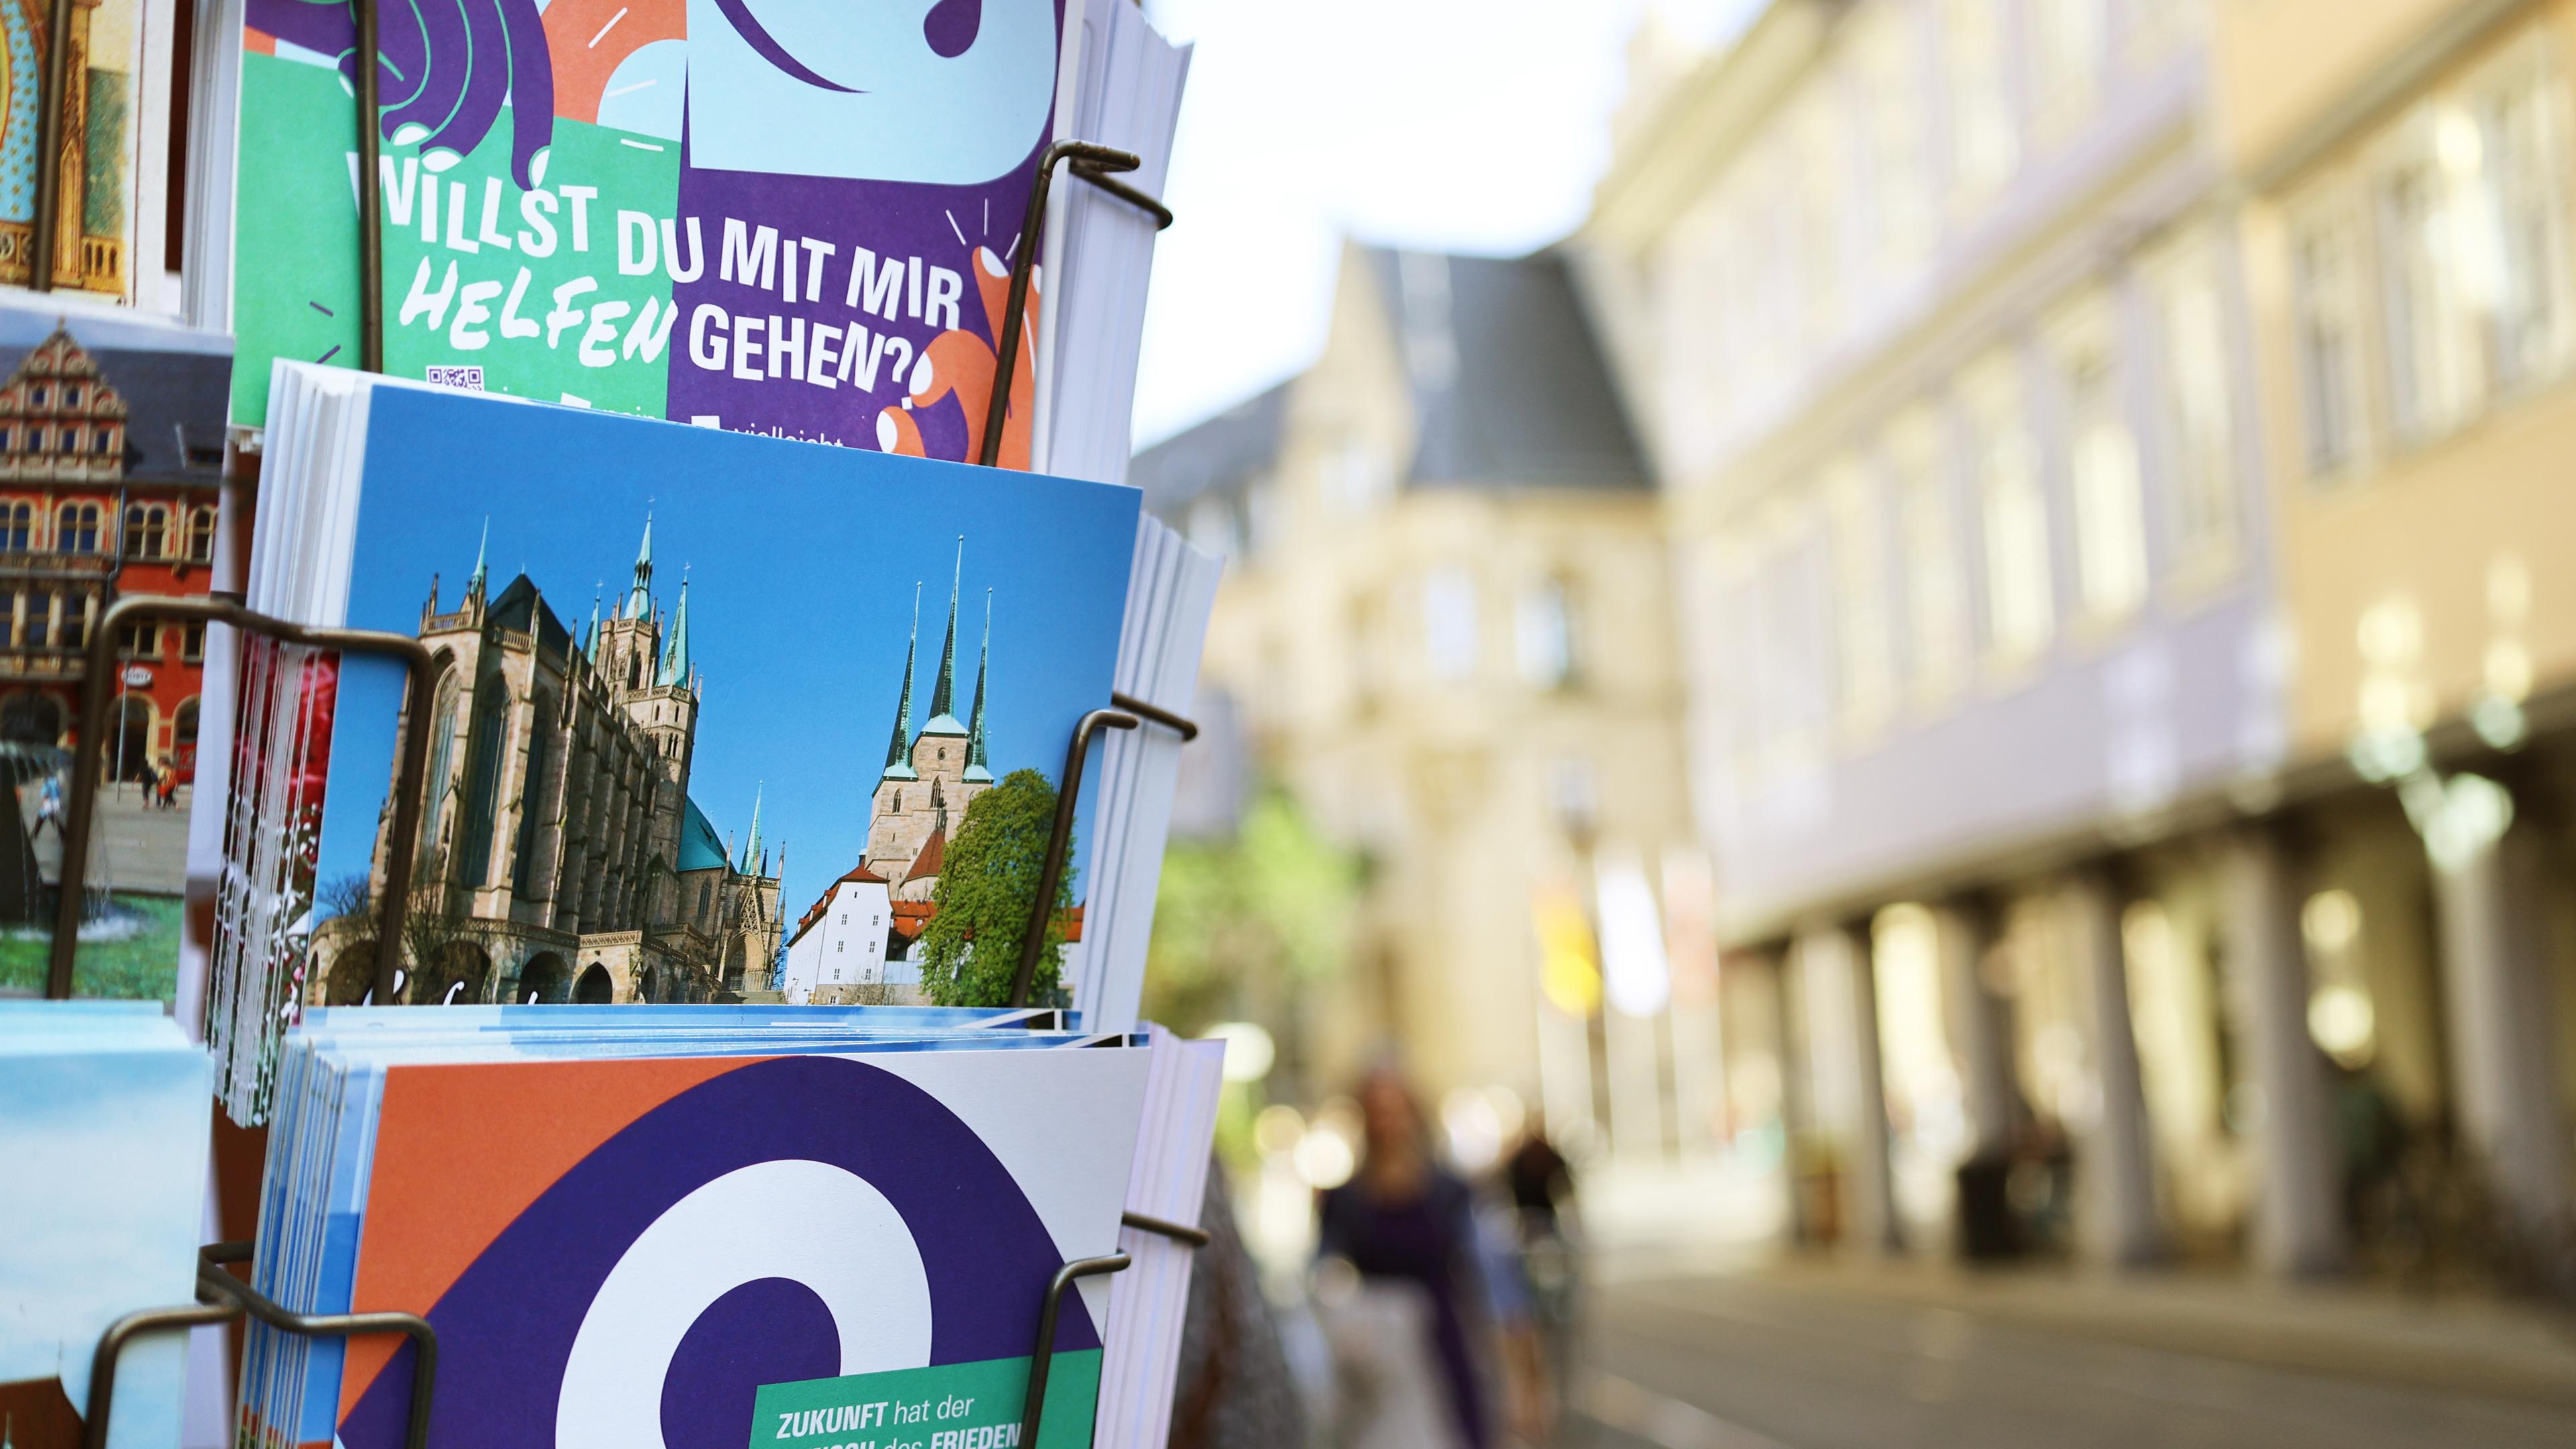 Ein Postkartenständer in Erfurt zeigt u.a. Karten mit dem Text "Willst Du mit mir helfen gehen?"